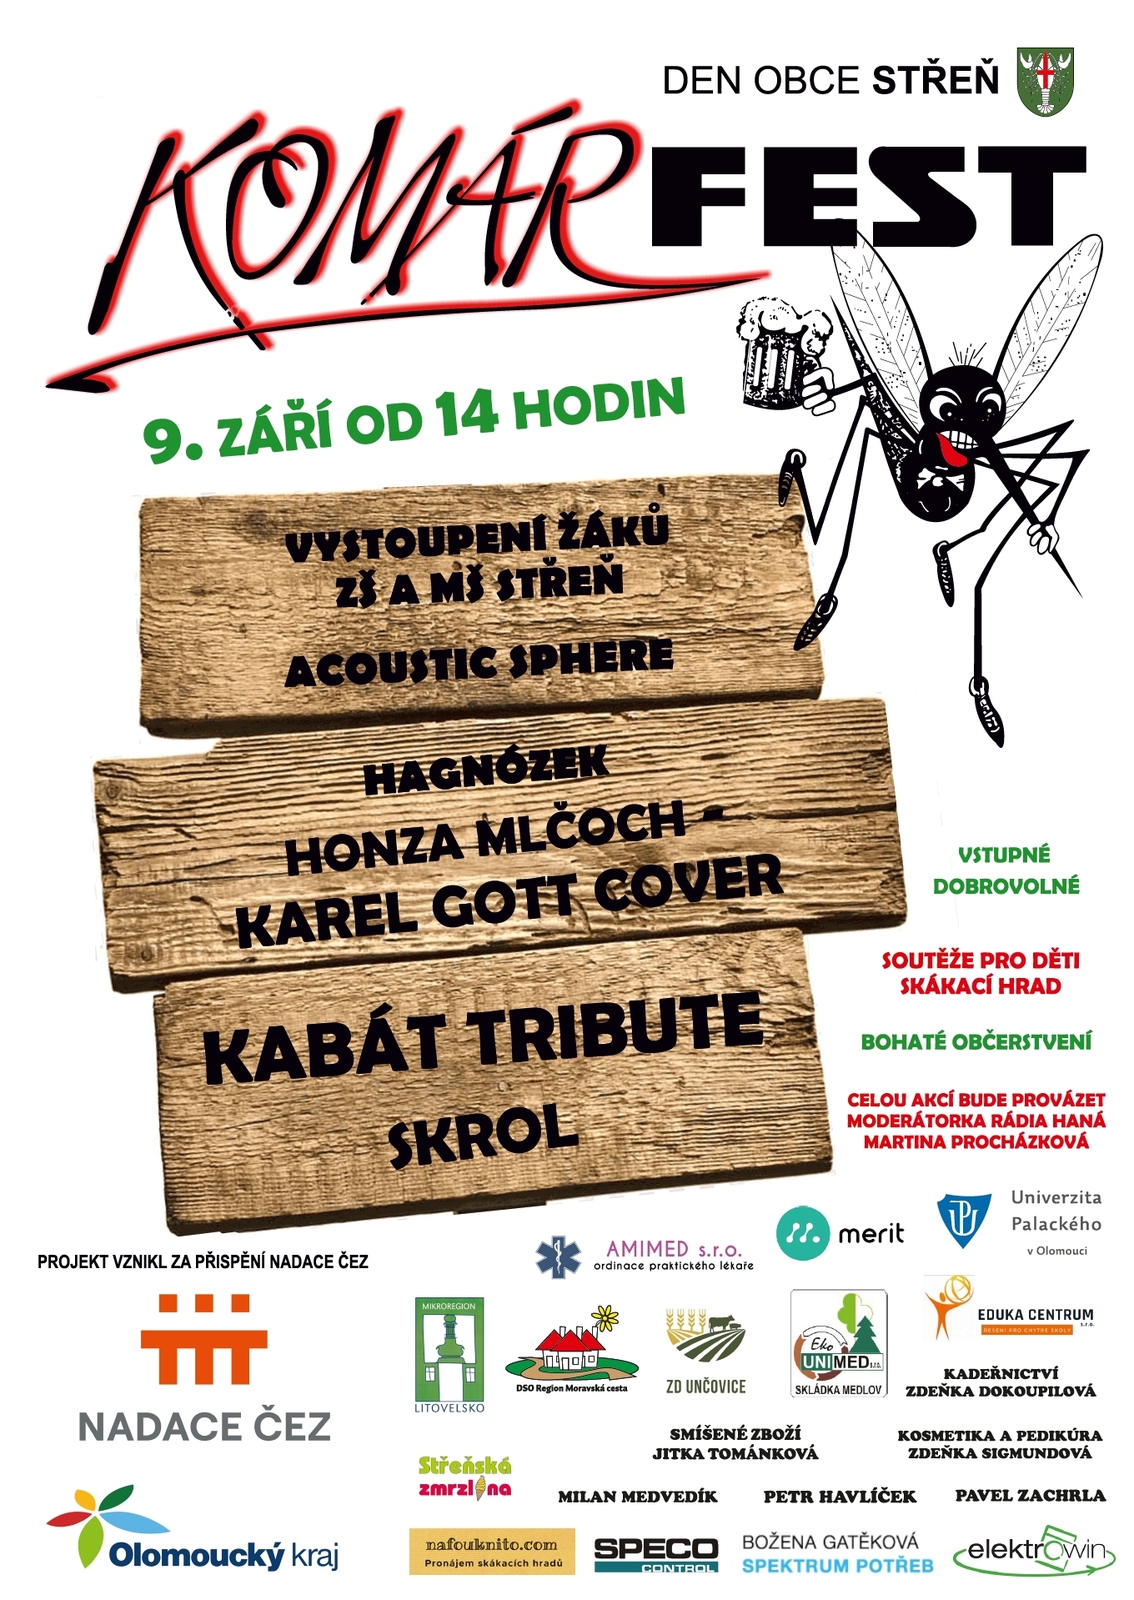 plakát Komárfest.jpg